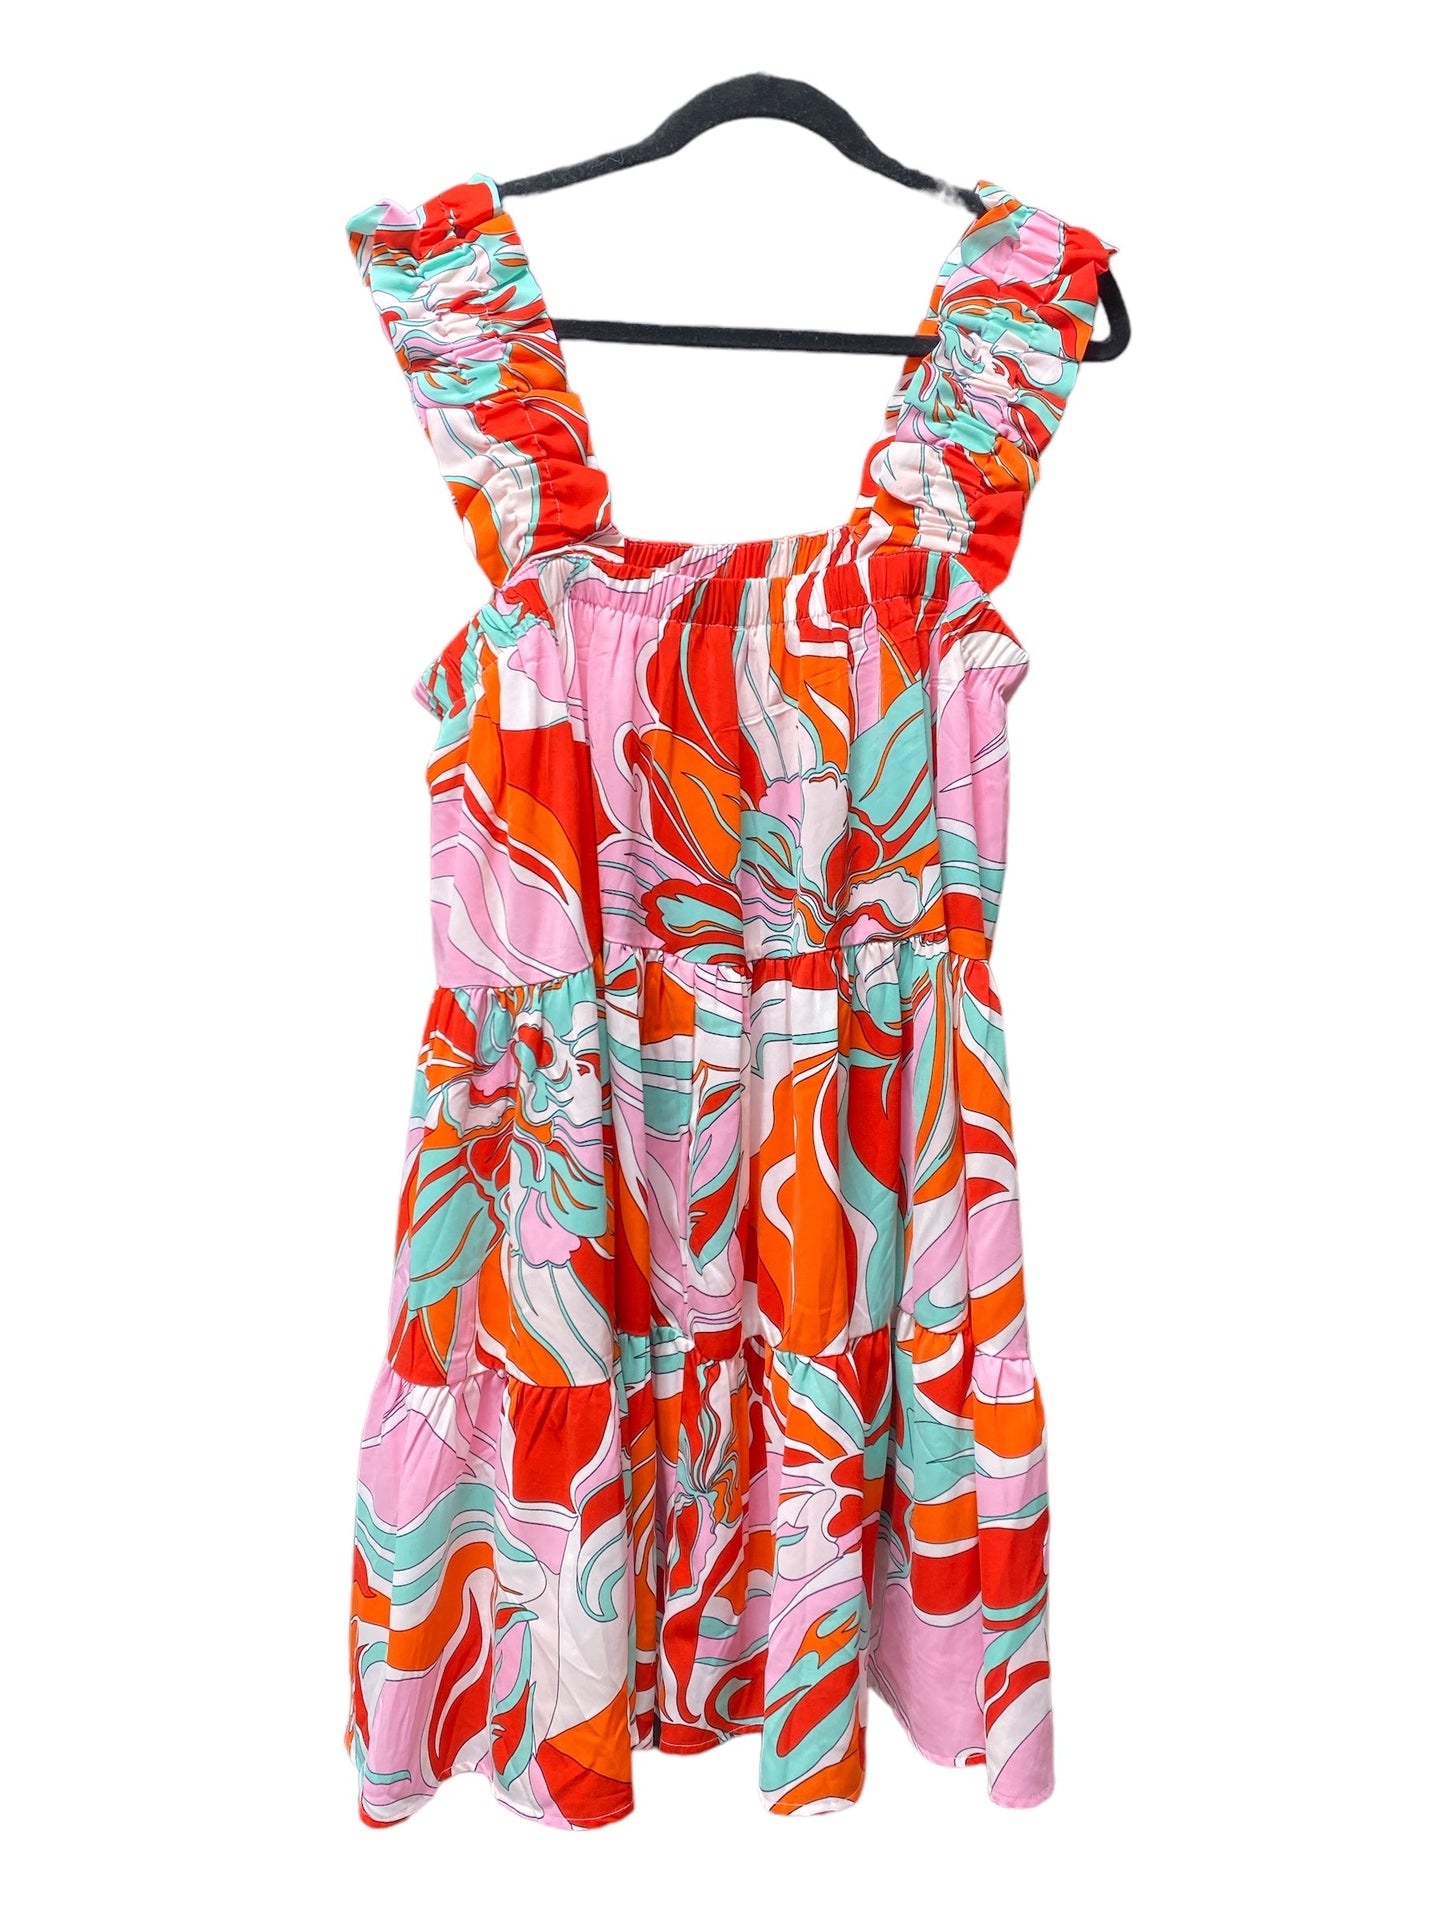 Multi-colored Dress Casual Short Entro, Size L